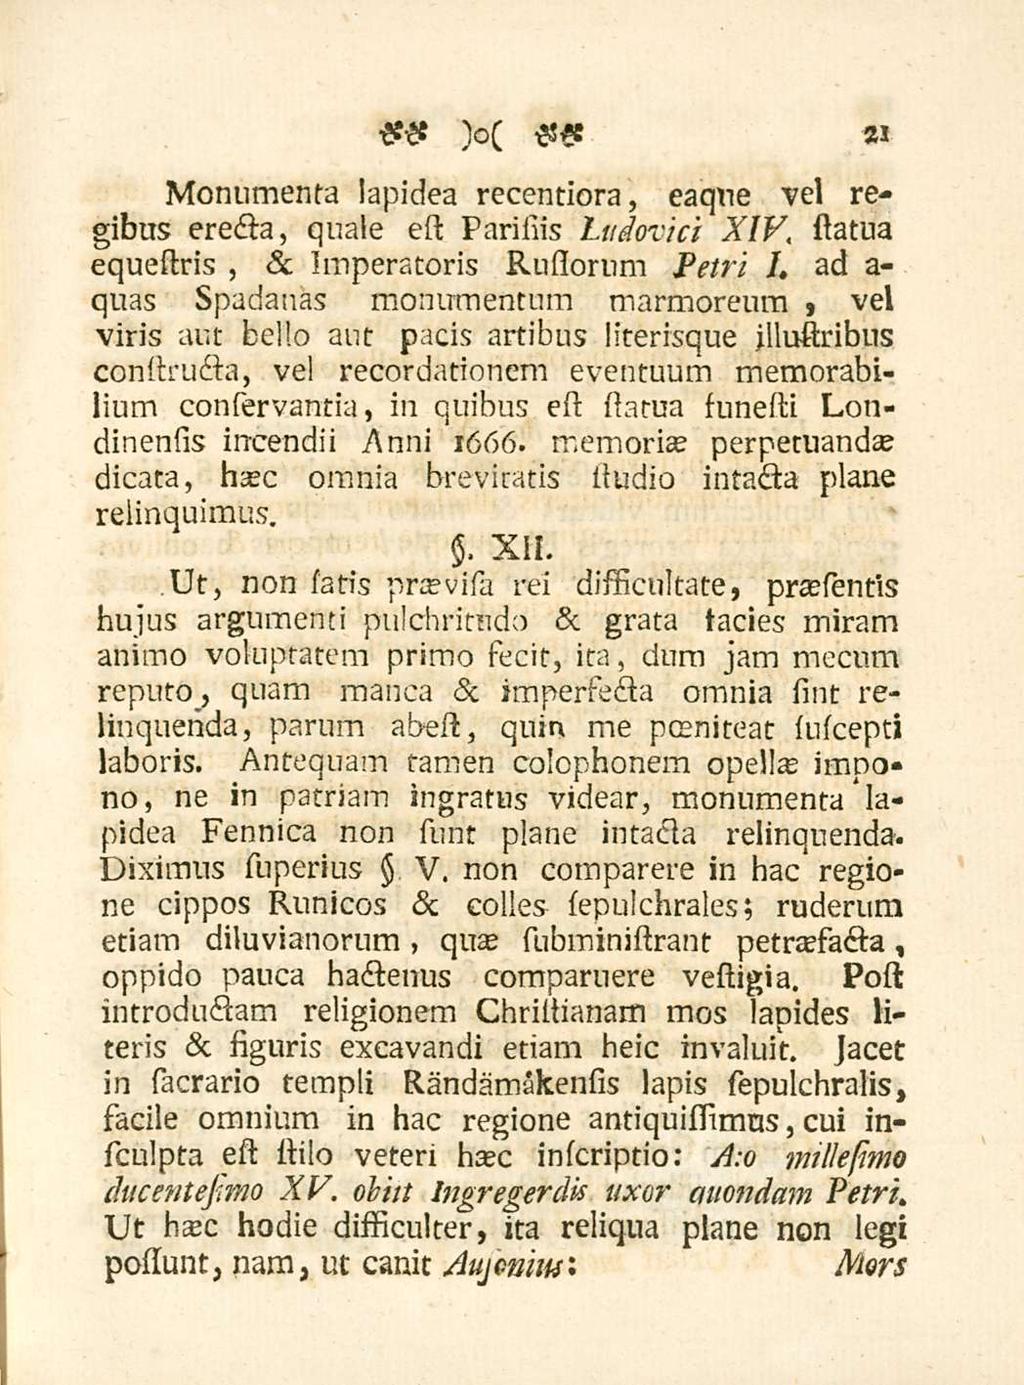 Monumenta lapidea recentiora, eaque vel regibus erecta, quale est Parisiis tudovici XIV, statua equestris &, Imperatoris Rusiorum Petri I.